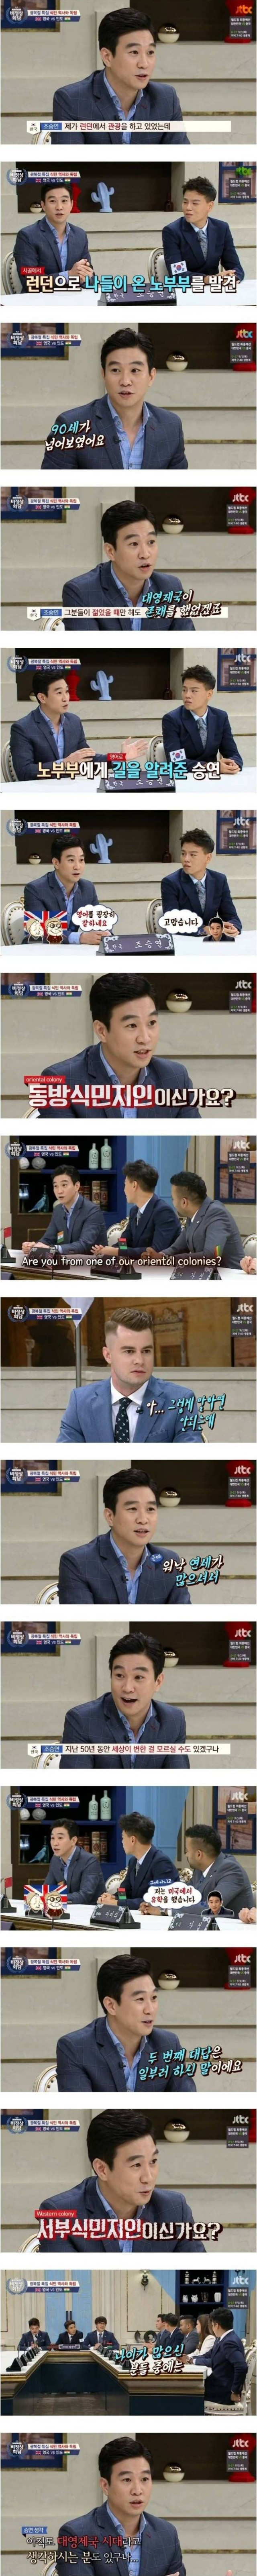 영어 잘하는 한국인을 본 영국인이 하는 생각